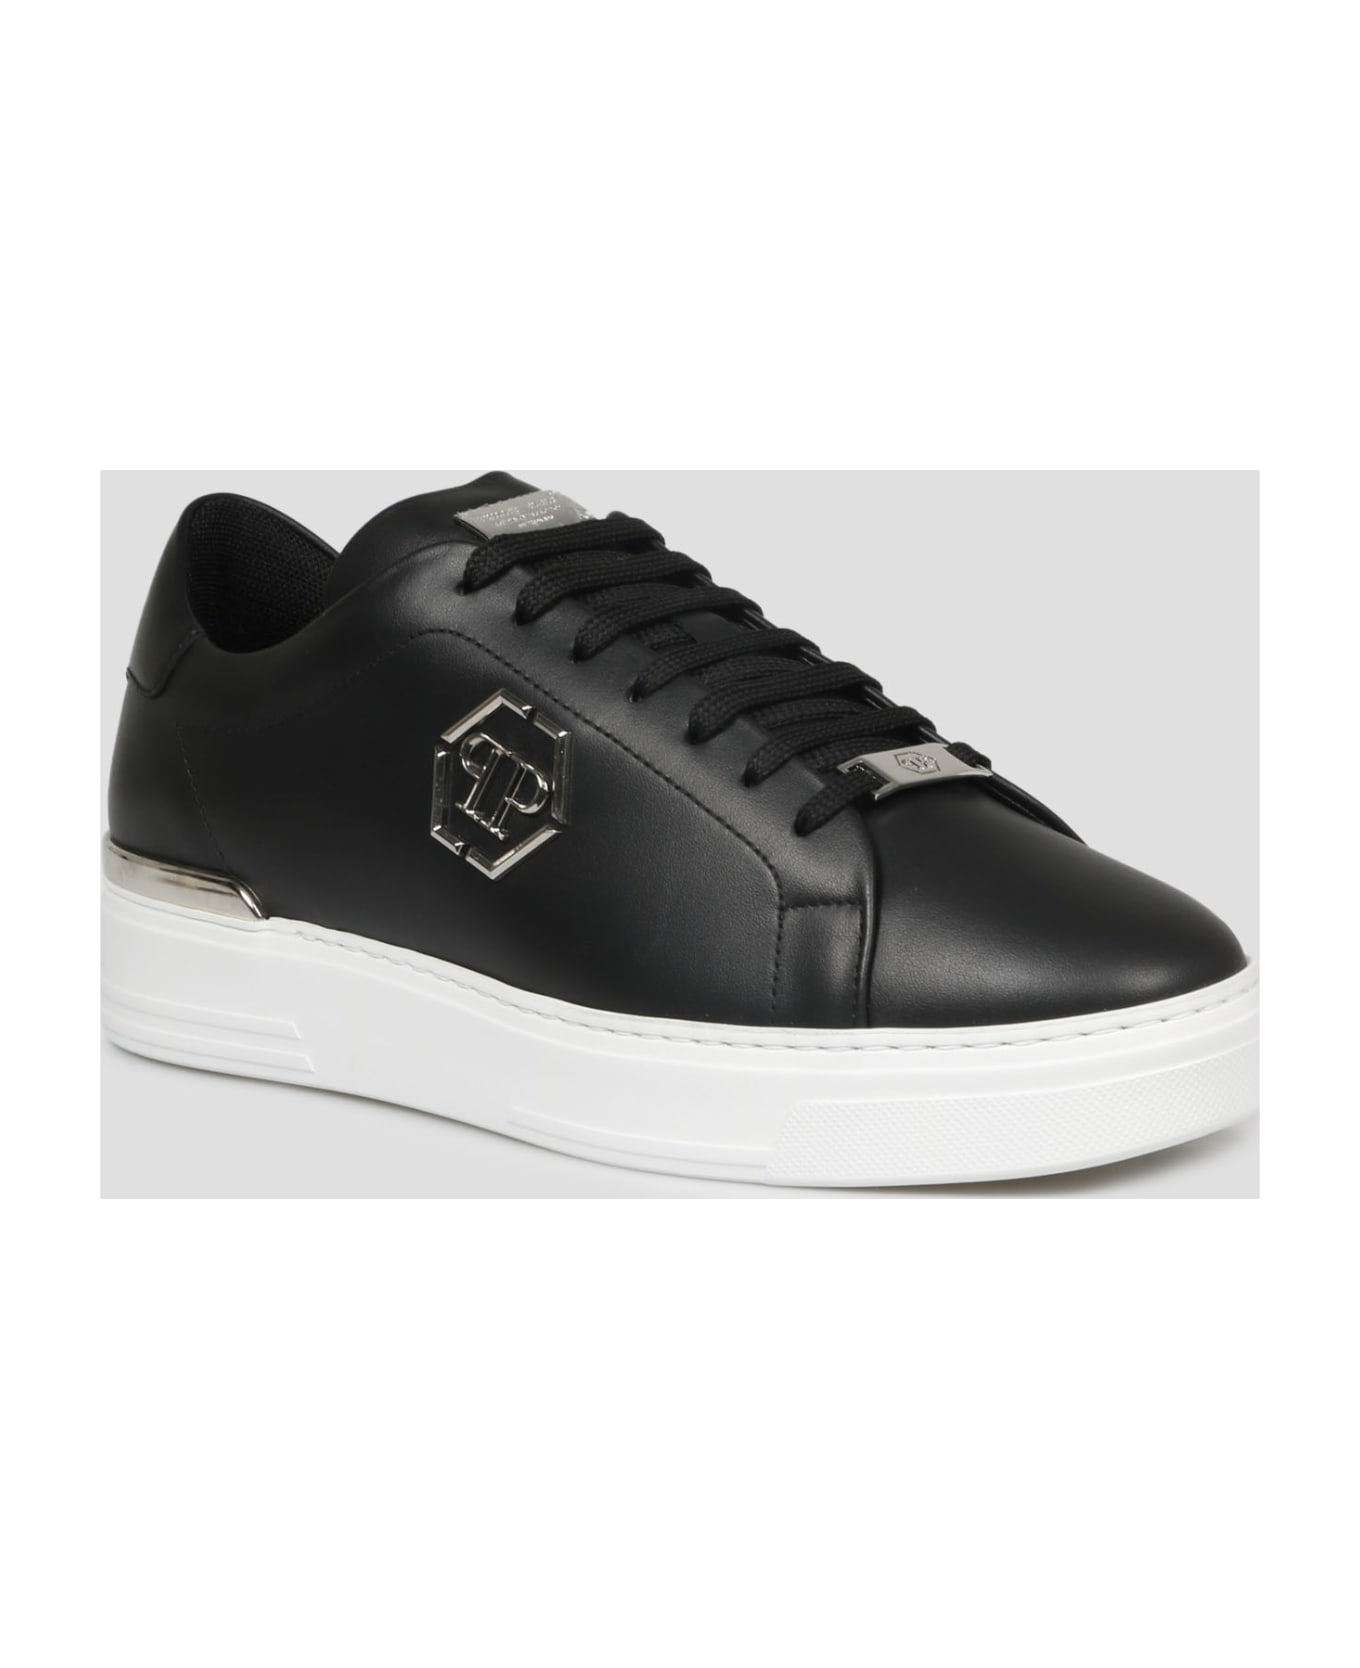 Philipp Plein Hexagon Low Top Sneakers - Black